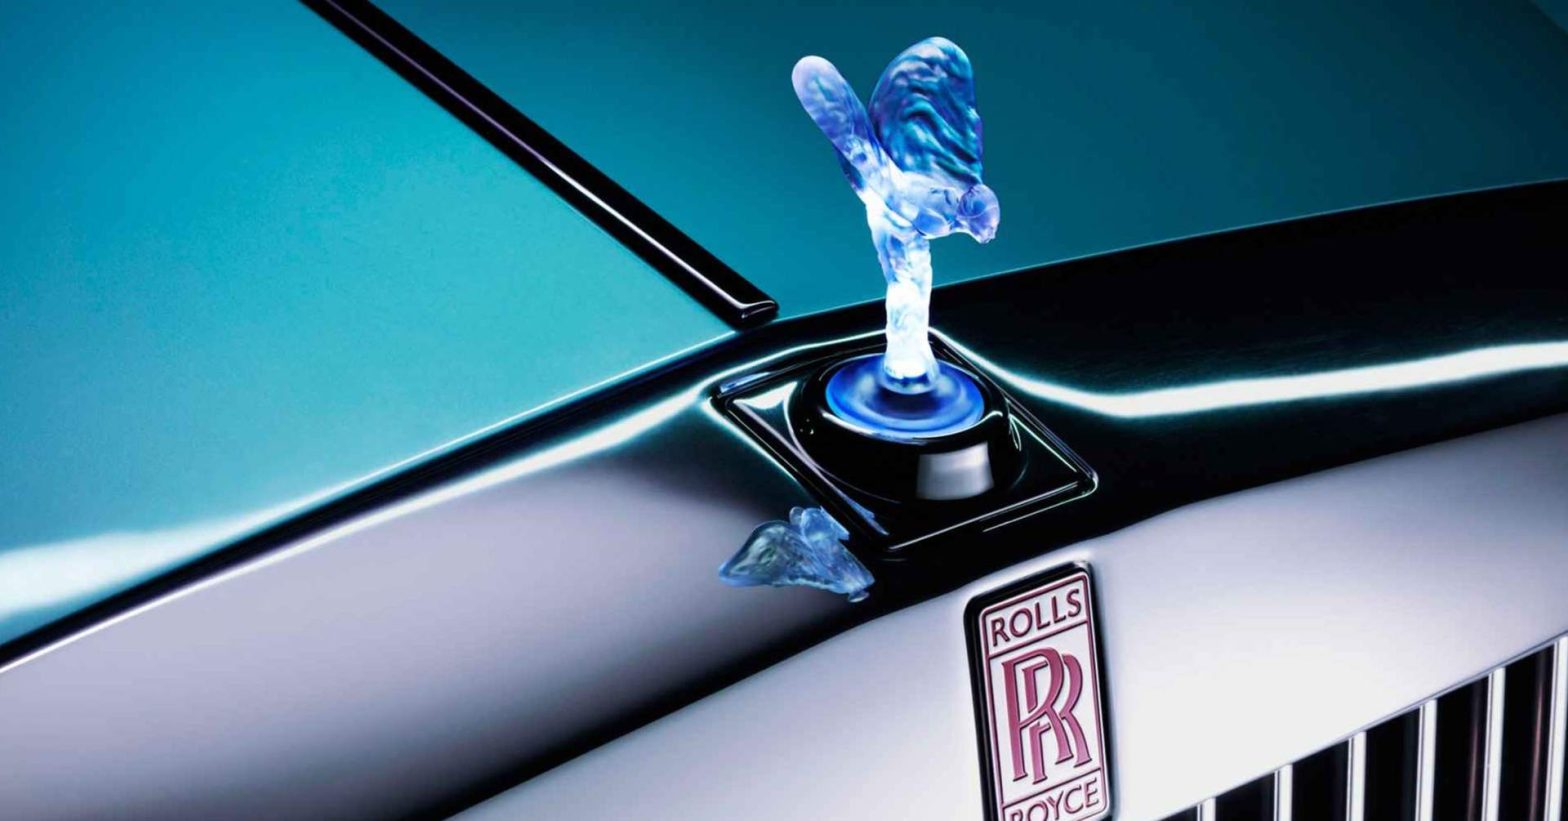 Tìm hiểu ý nghĩa của biểu tượng xe Rolls Royce